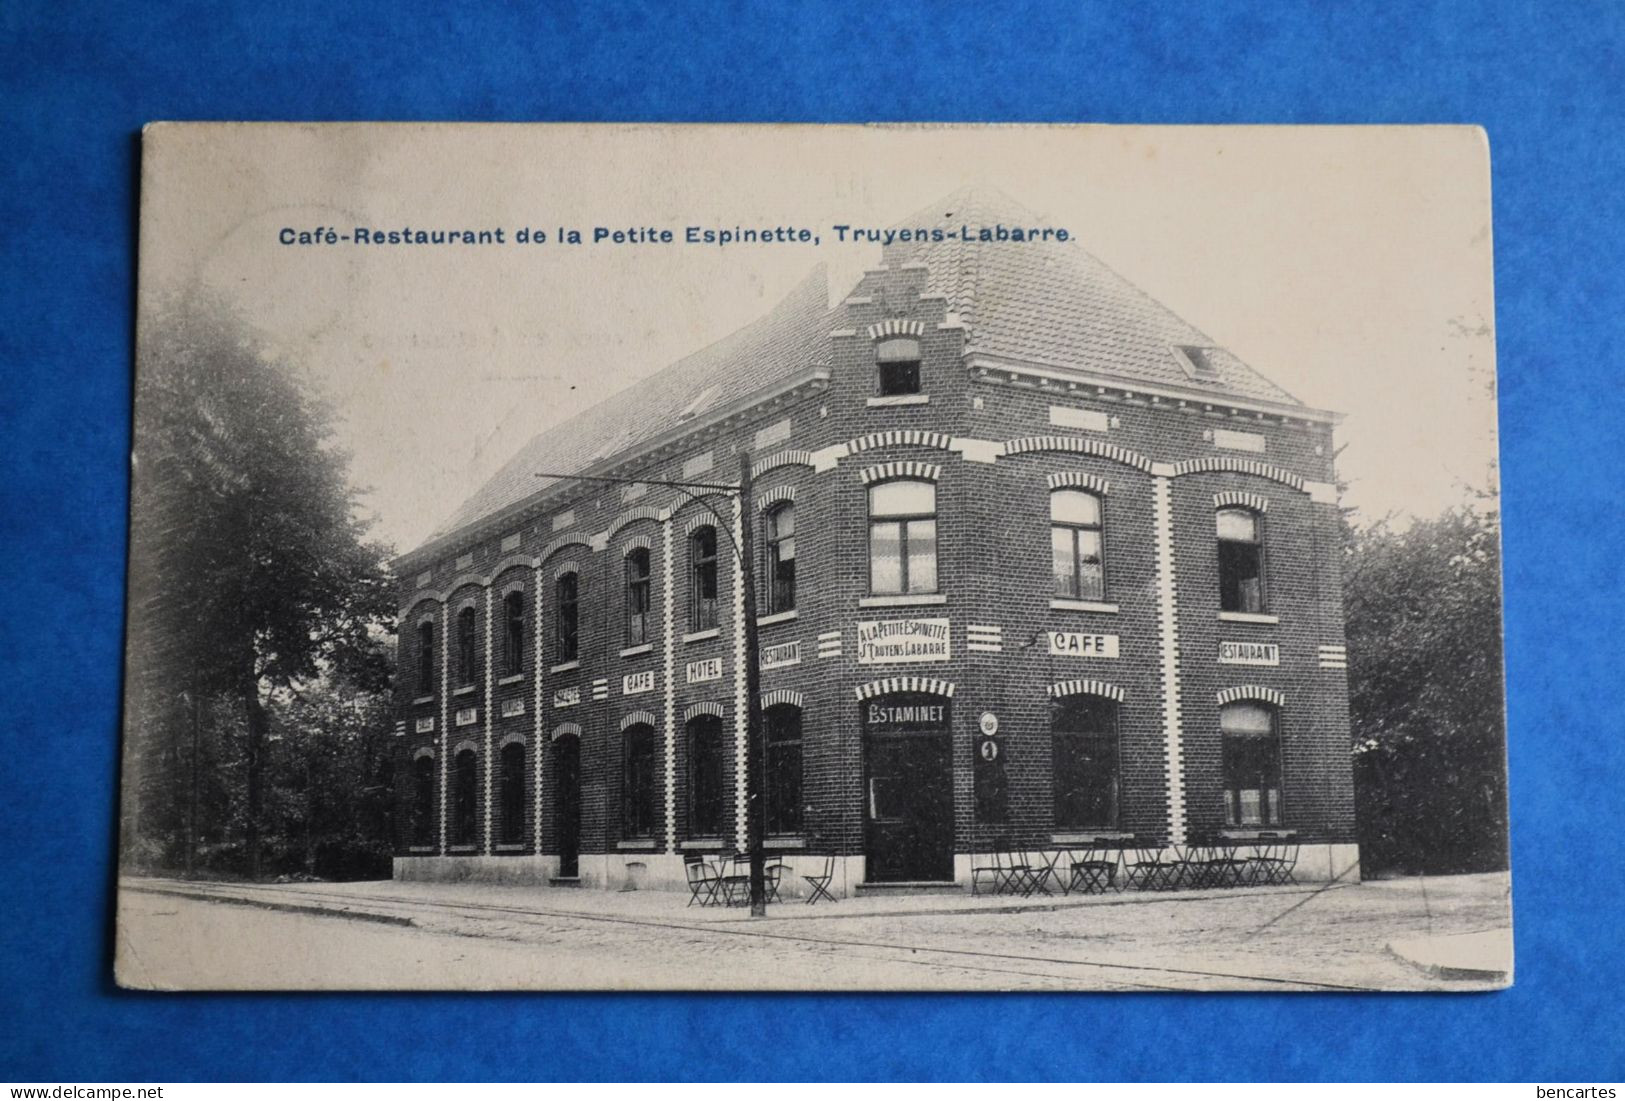 Uccle 1910: Café-Restaurant De La Petite Espinette, Truyens-Labarre - Ukkel - Uccle